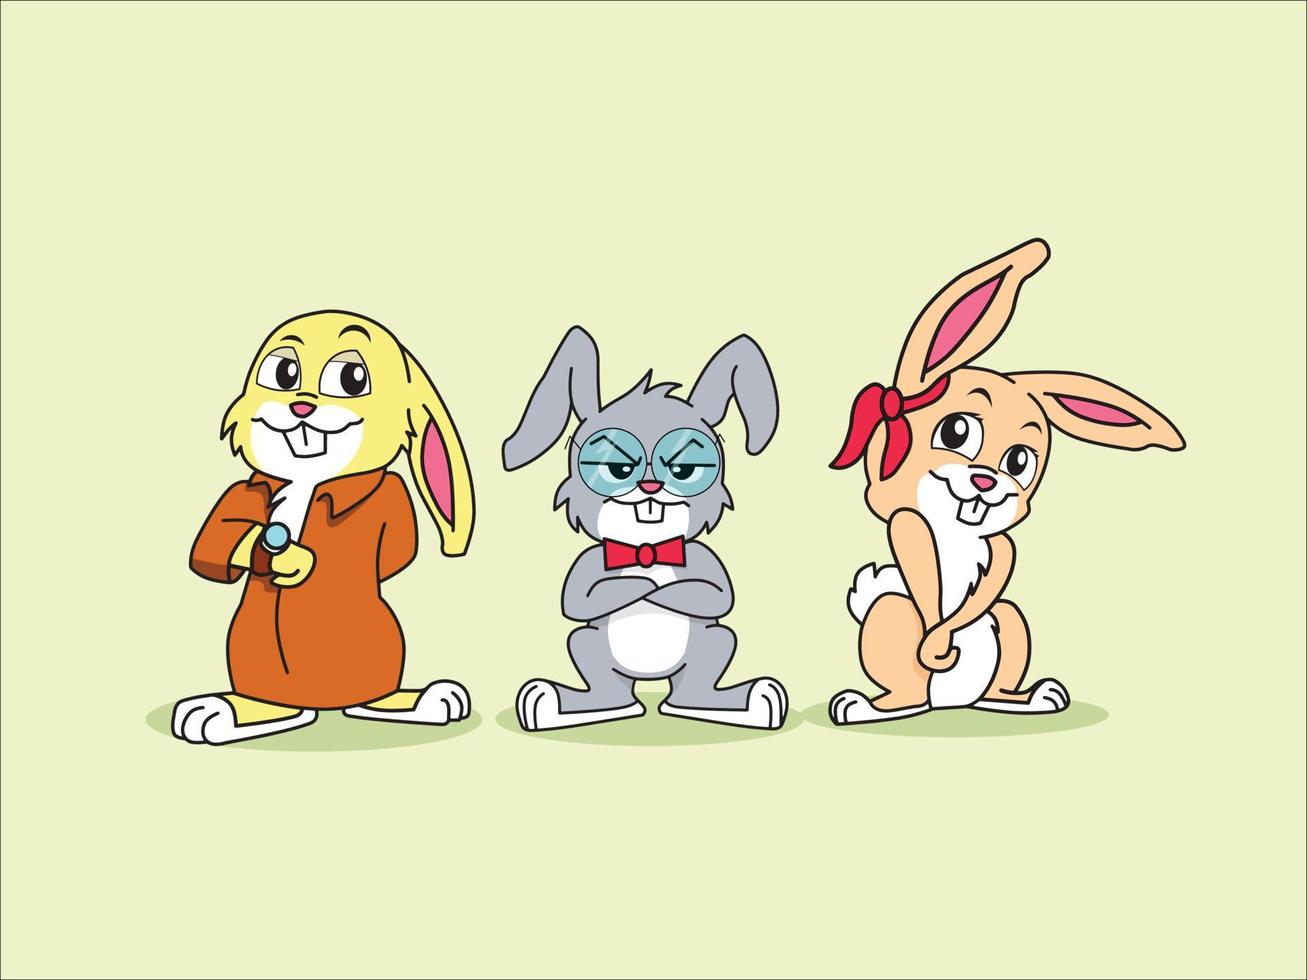 Three Cute Rabbits Illustration vector